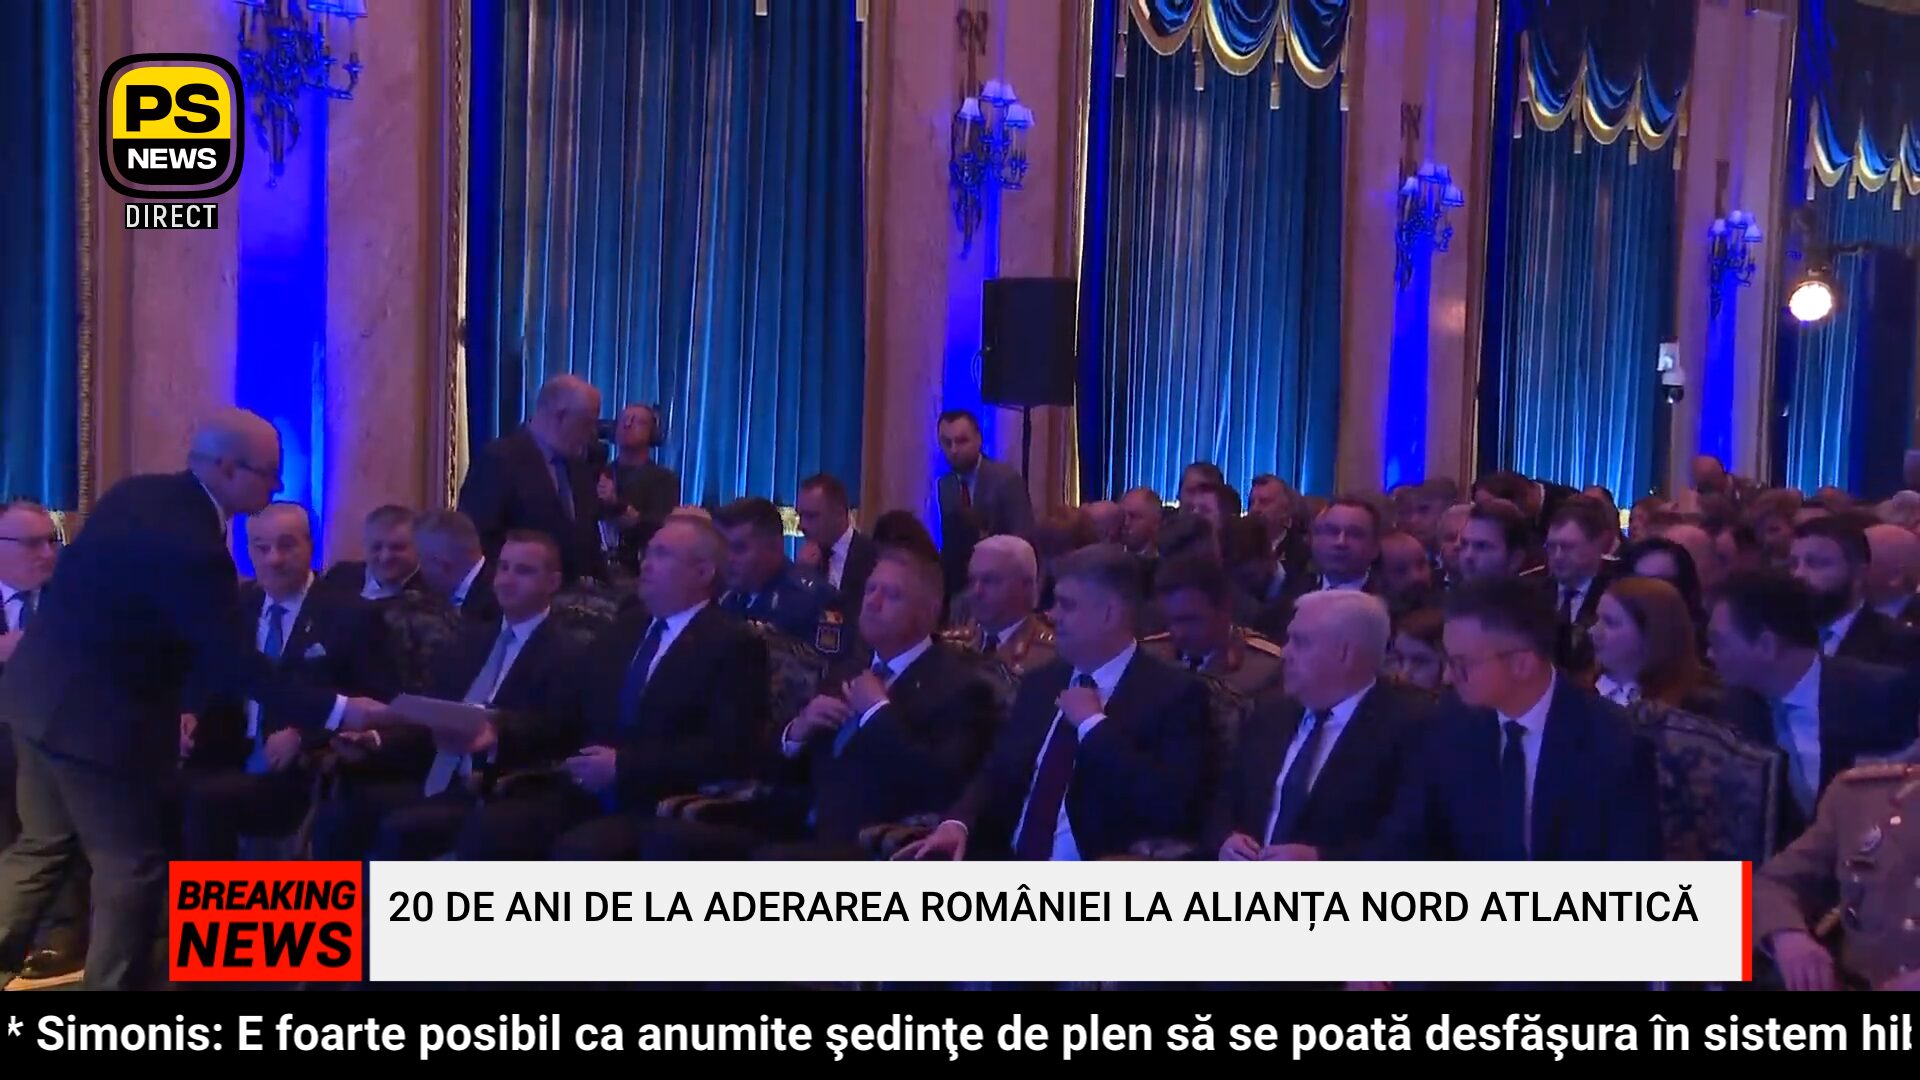 PS News TV | 20 de ani de la aderarea României la Alianța Nord Atlantică